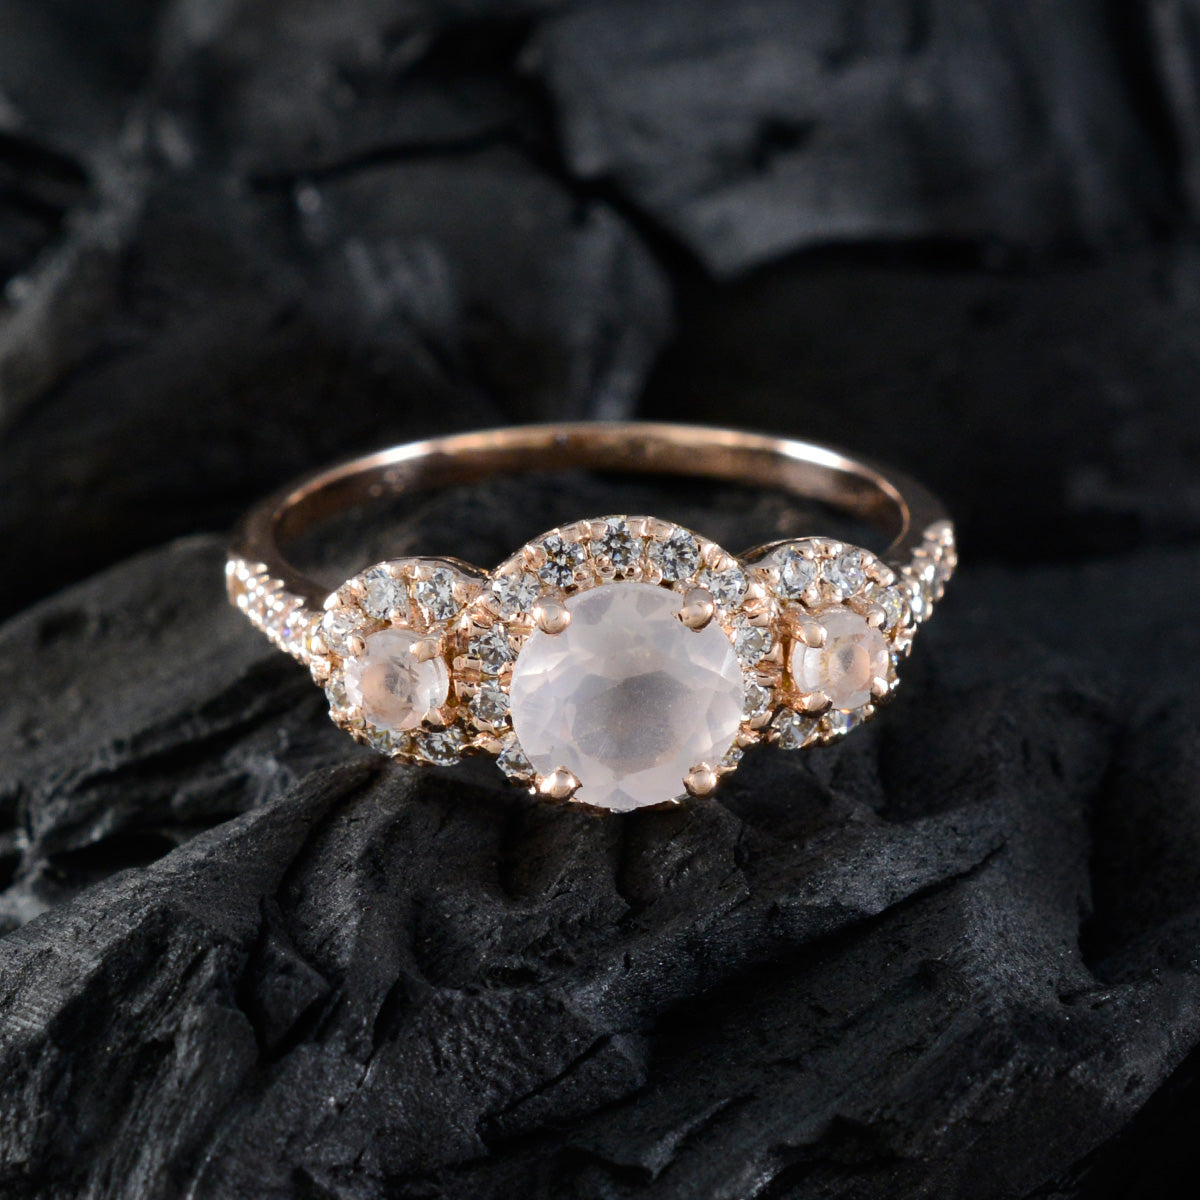 riyo gioielli anello in argento con placcatura in oro rosa pietra di quarzo rosa forma rotonda con montatura a punta anello di capodanno di gioielli firmati